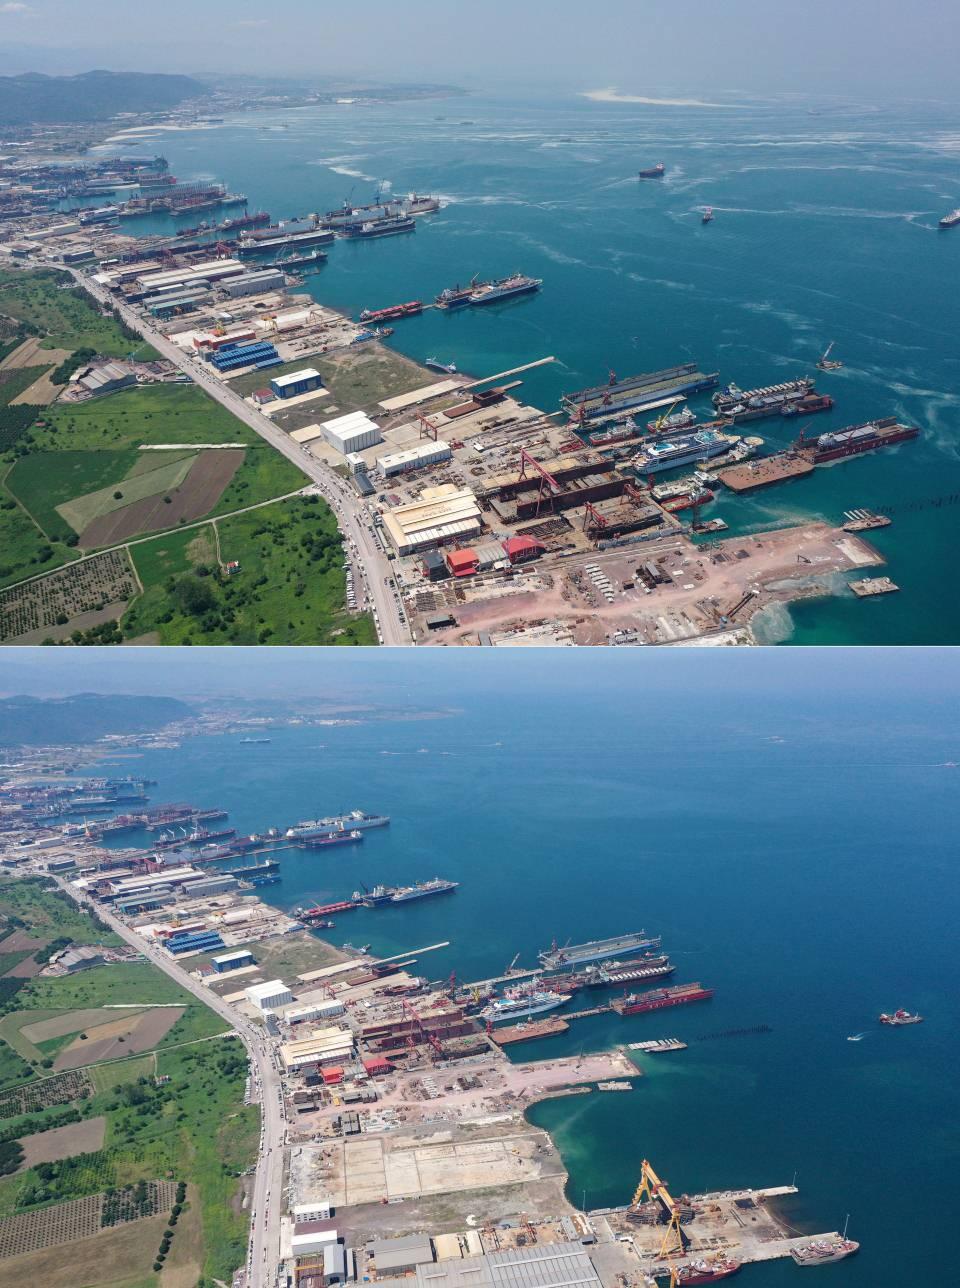 <p>Çevre ve Şehircilik Bakanlığının 22 maddelik "Marmara Denizi Koruma Eylem Planı" kapsamında 8 Haziran'da başlattığı girişimle yürütülen çalışmalar ise dördüncü haftasında aralıksız sürüyor. Bu kapsamda Marmara Denizi'nden 592 bölgede yürütülen çalışmalar sonucu 10 bin 500 metreküp müsilaj toplanarak bertaraf edildi.</p>

<p> </p>
